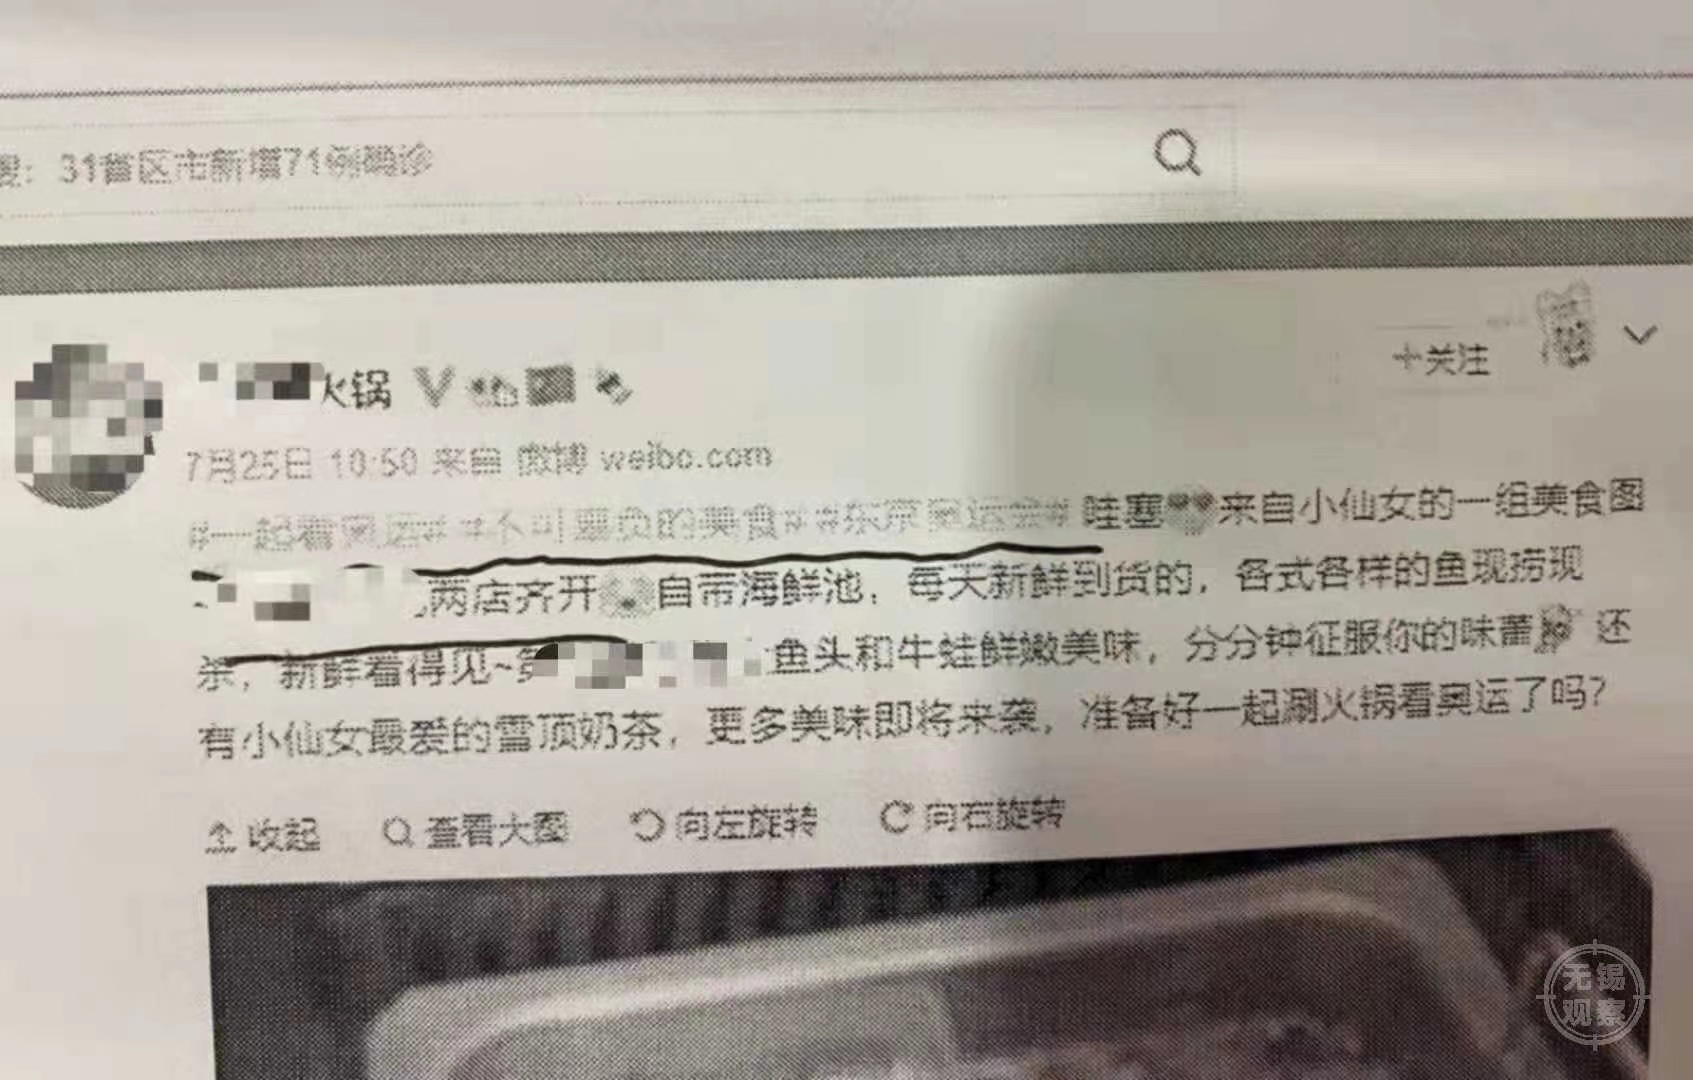 火锅店奥运期间蹭热点在微博打广告，侵犯标志专有权被罚3万